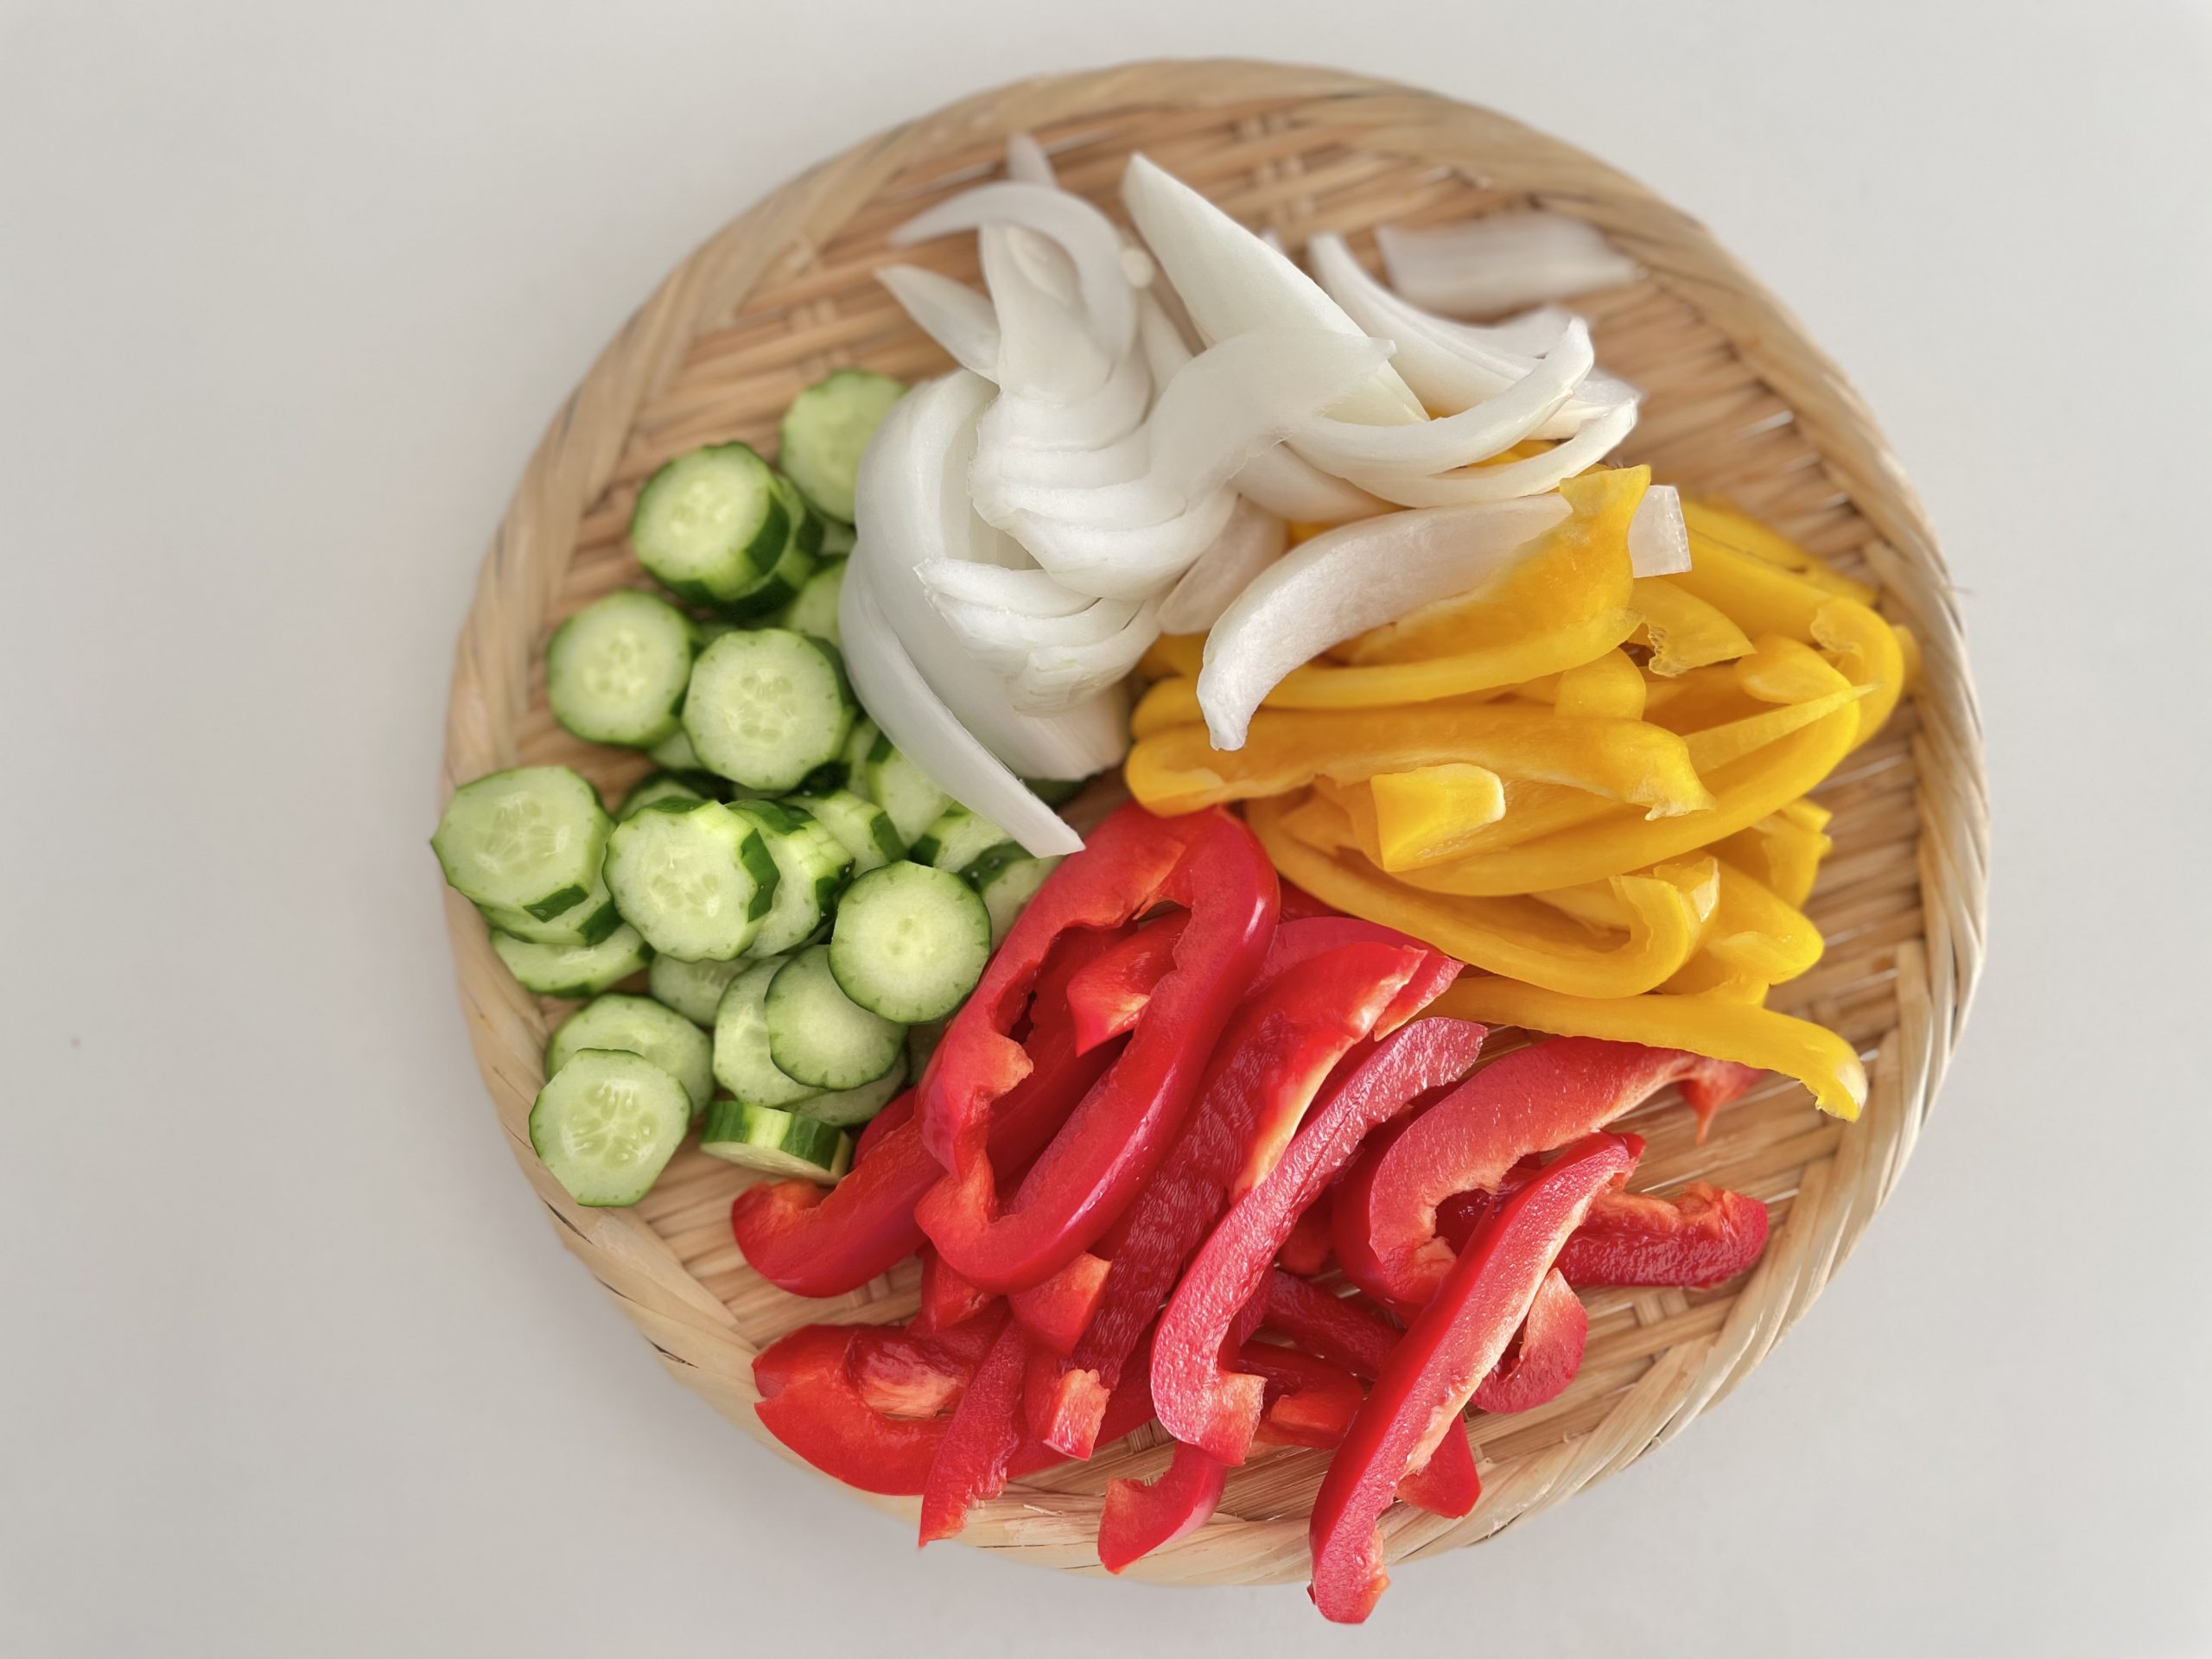 調味液を加熱している間に野菜を切る。<br />
パプリカは横幅1cmで縦に切る。<br />
玉ねぎはくし型、胡瓜は1cm幅の輪切りにする。